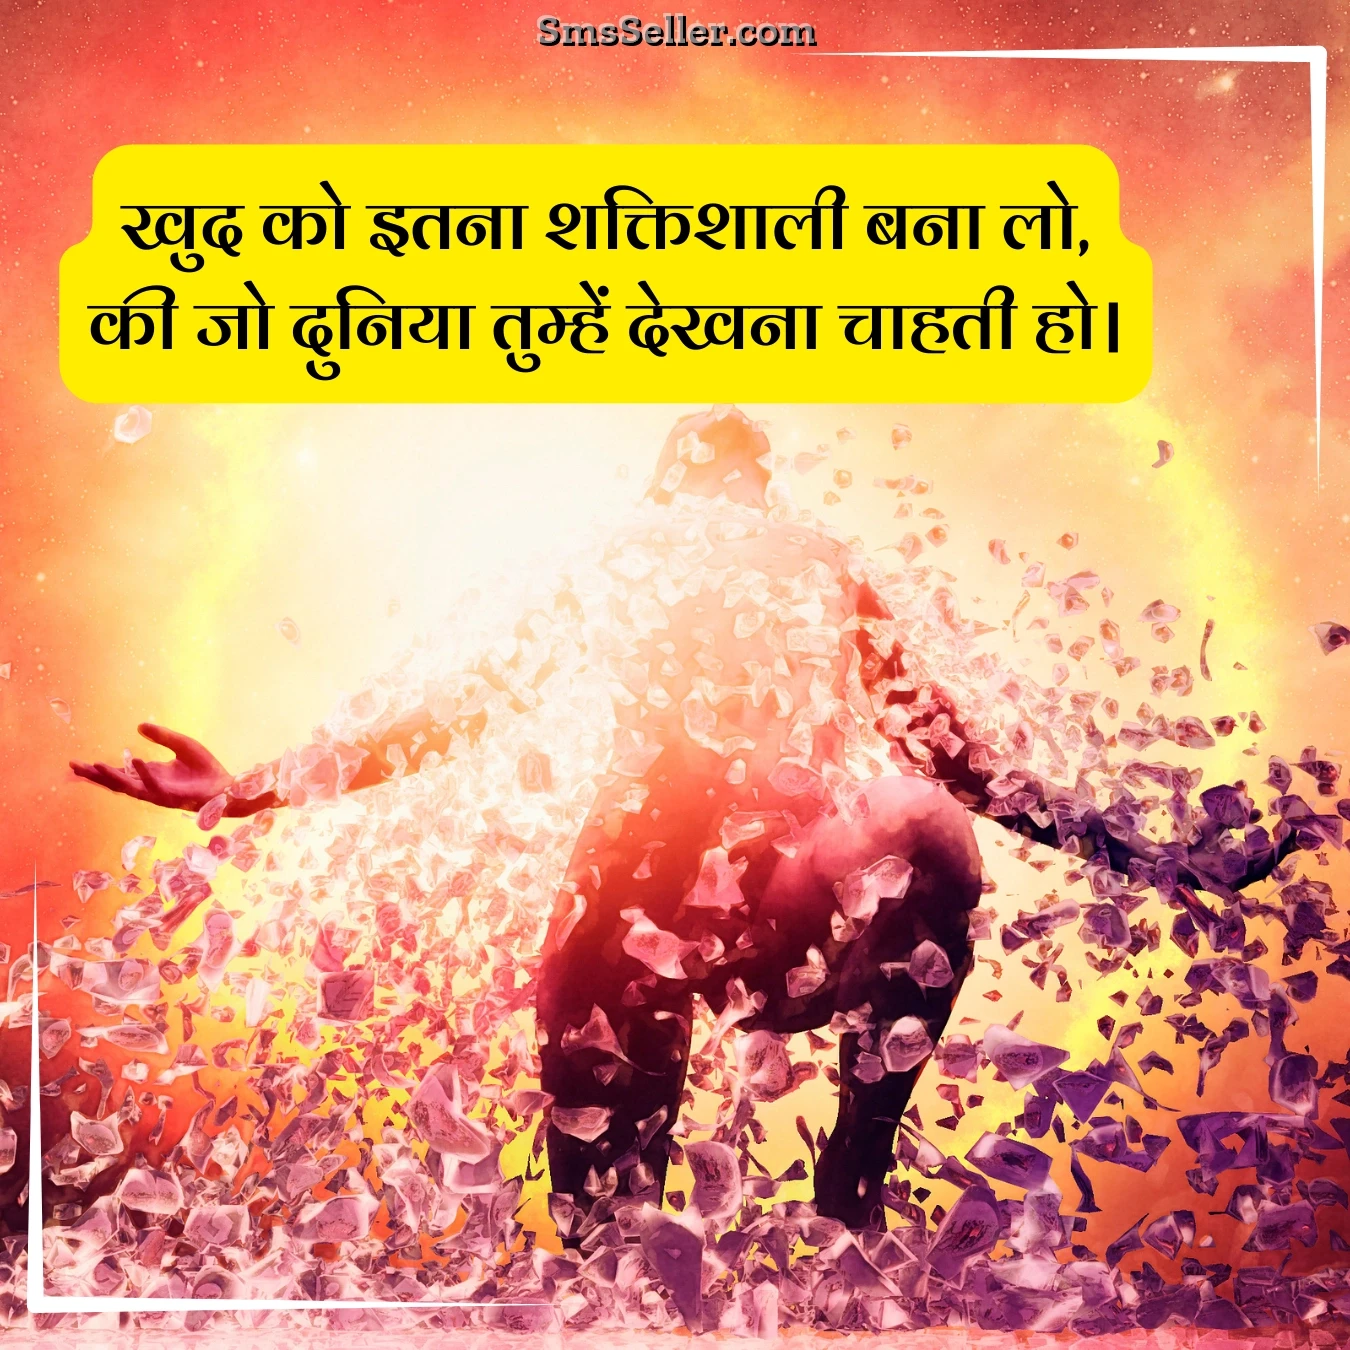 status in hindi grow self powerful khud shaktishaalee bana